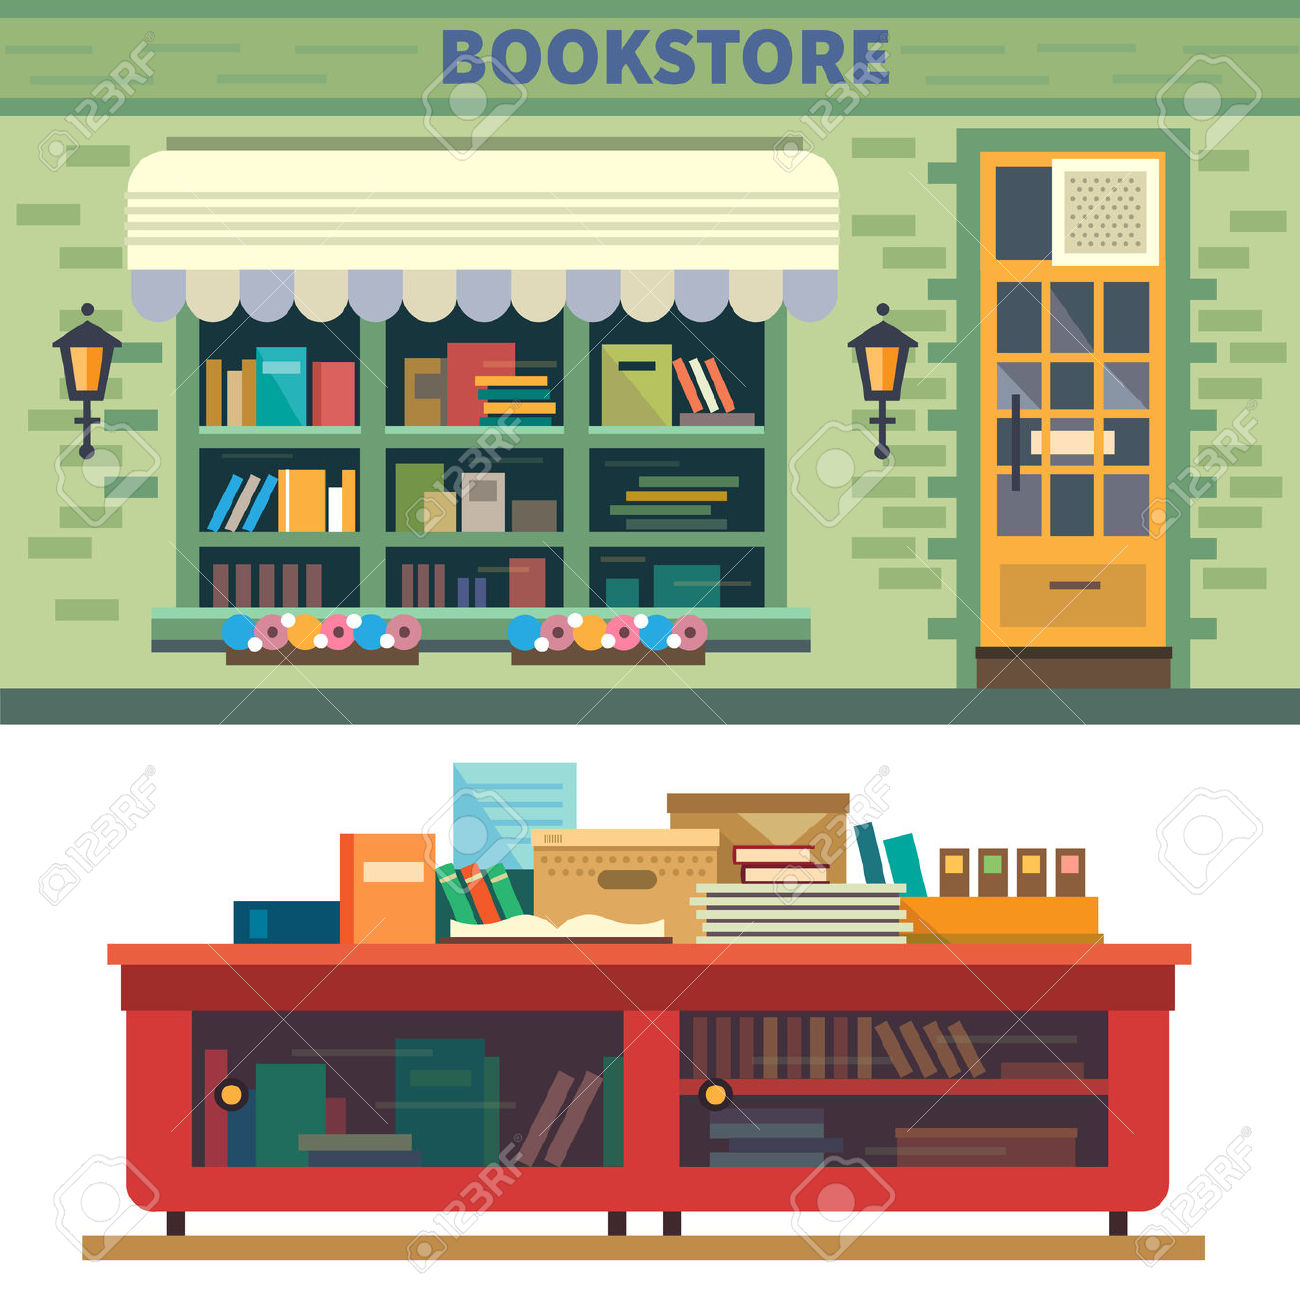 bookstore: Bookstore located 